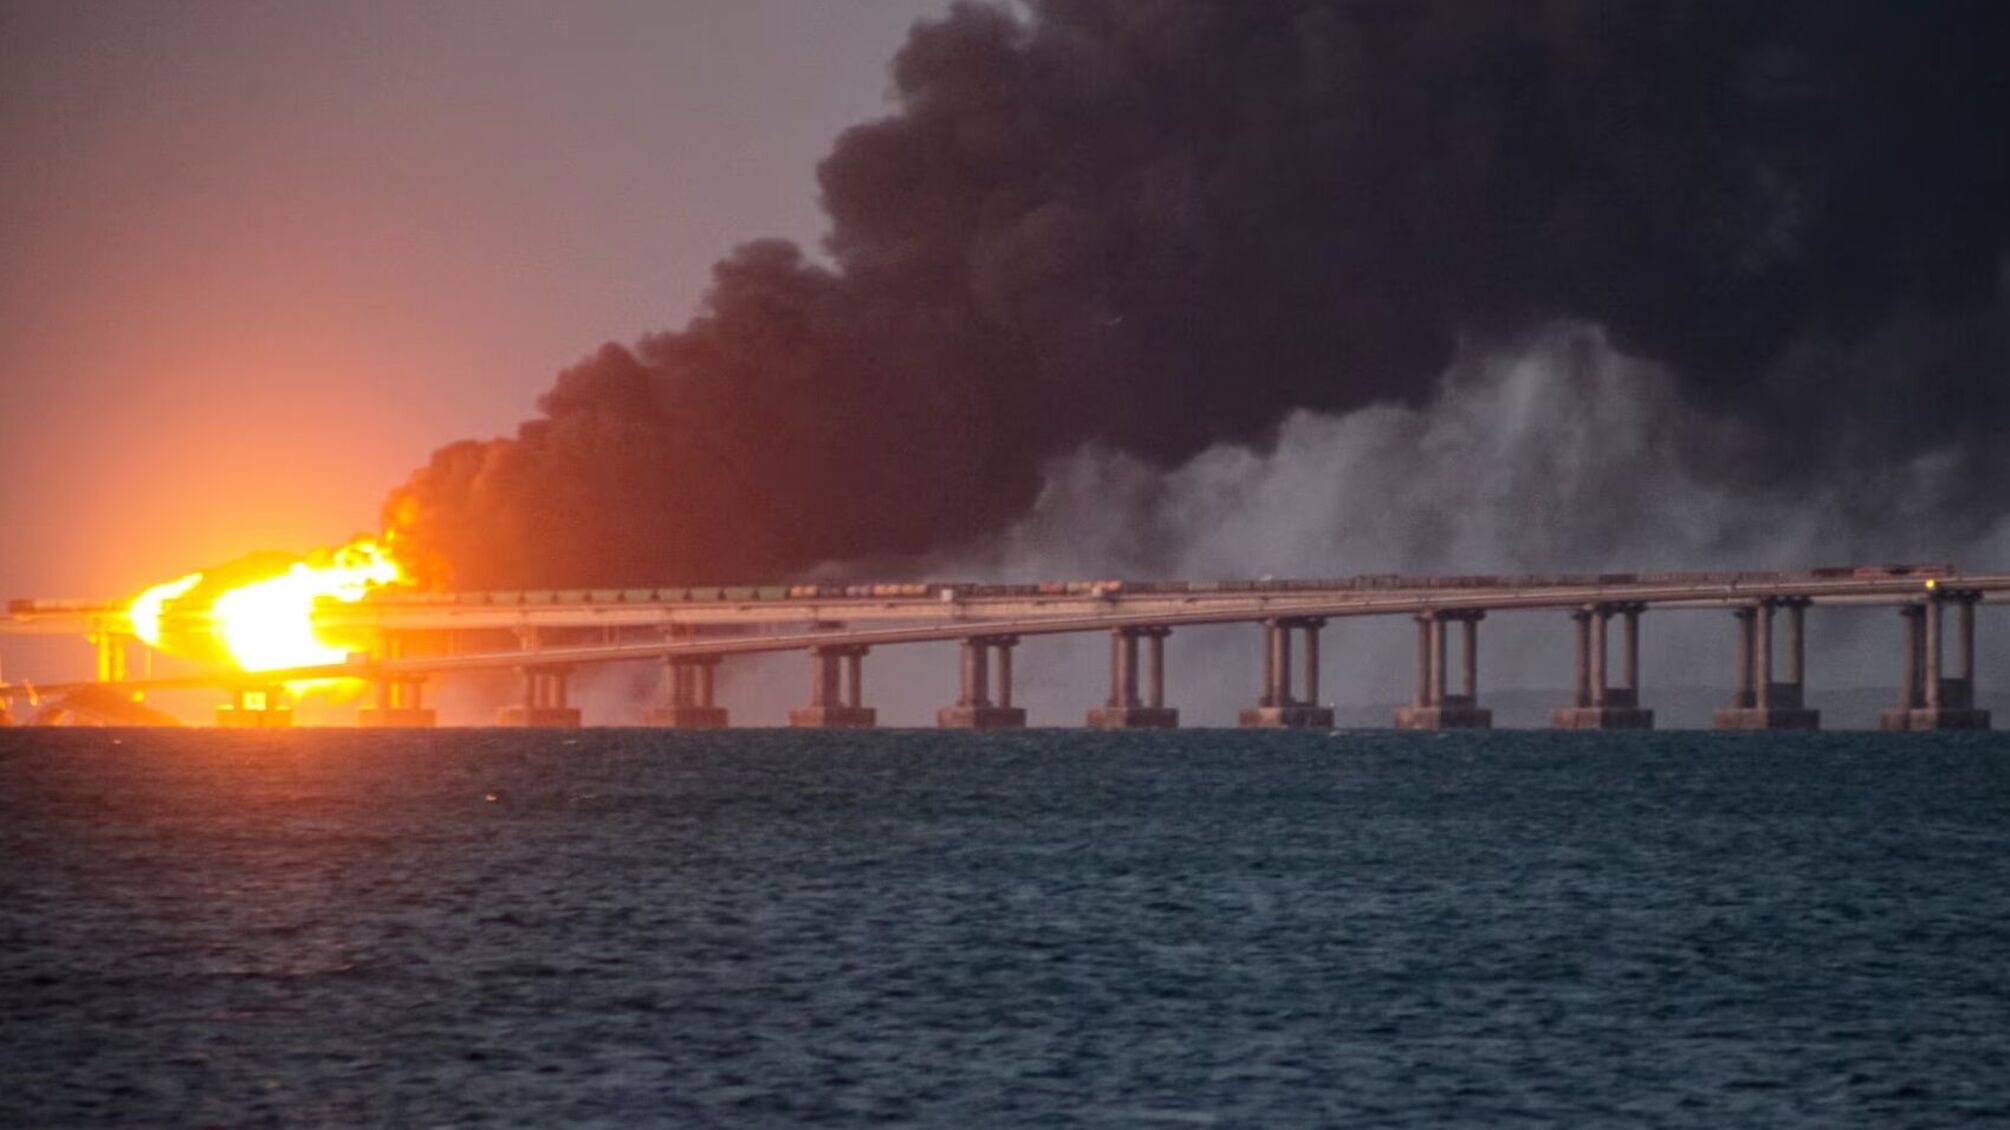 Украинская разведка готовит третье покушение на Керченский мост: The Guardian ссылаясь на ГУР